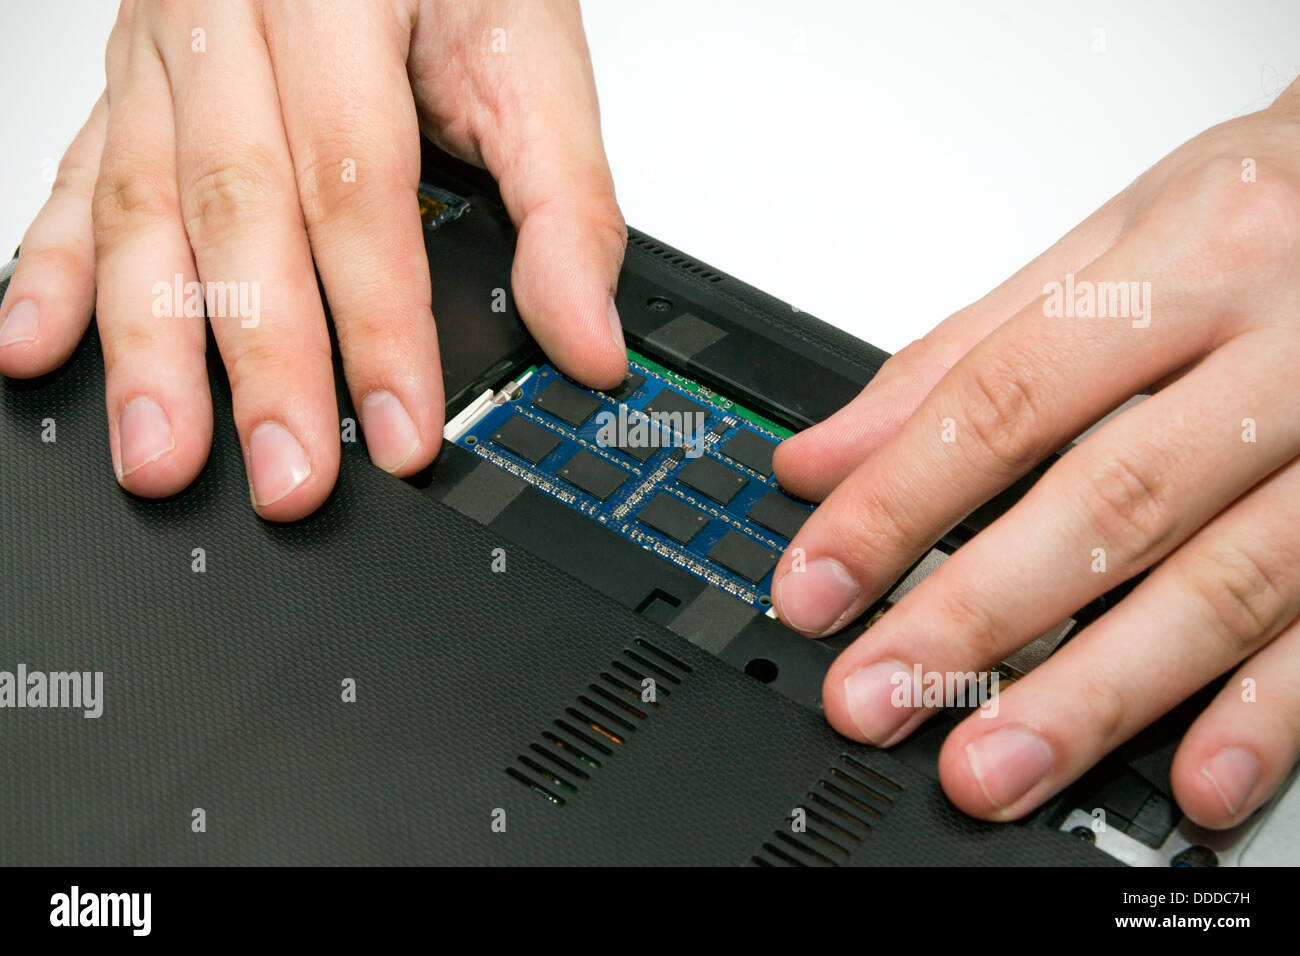 Man installing memory. Laptop RAM upgrade Stock Photo